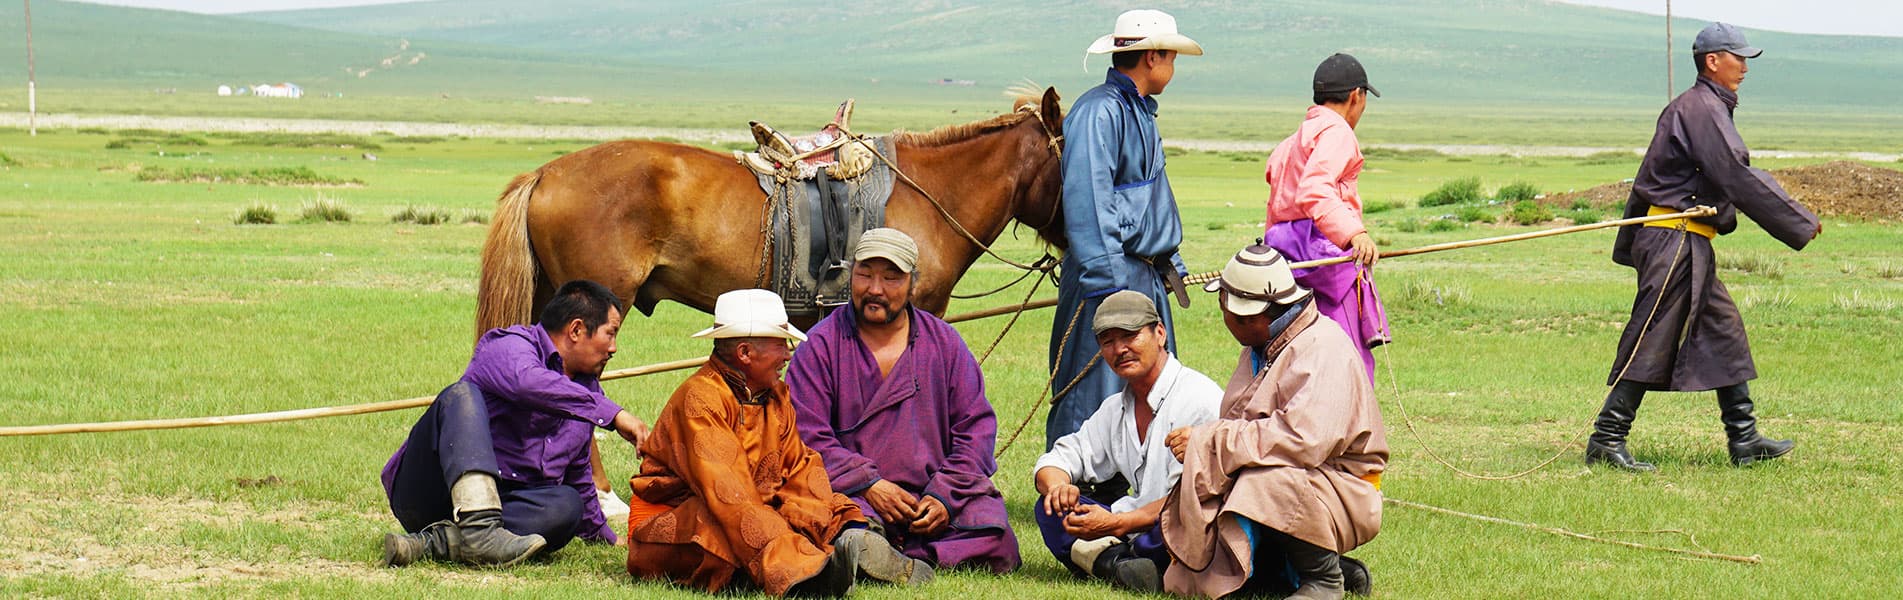 Mongolia herdsmen